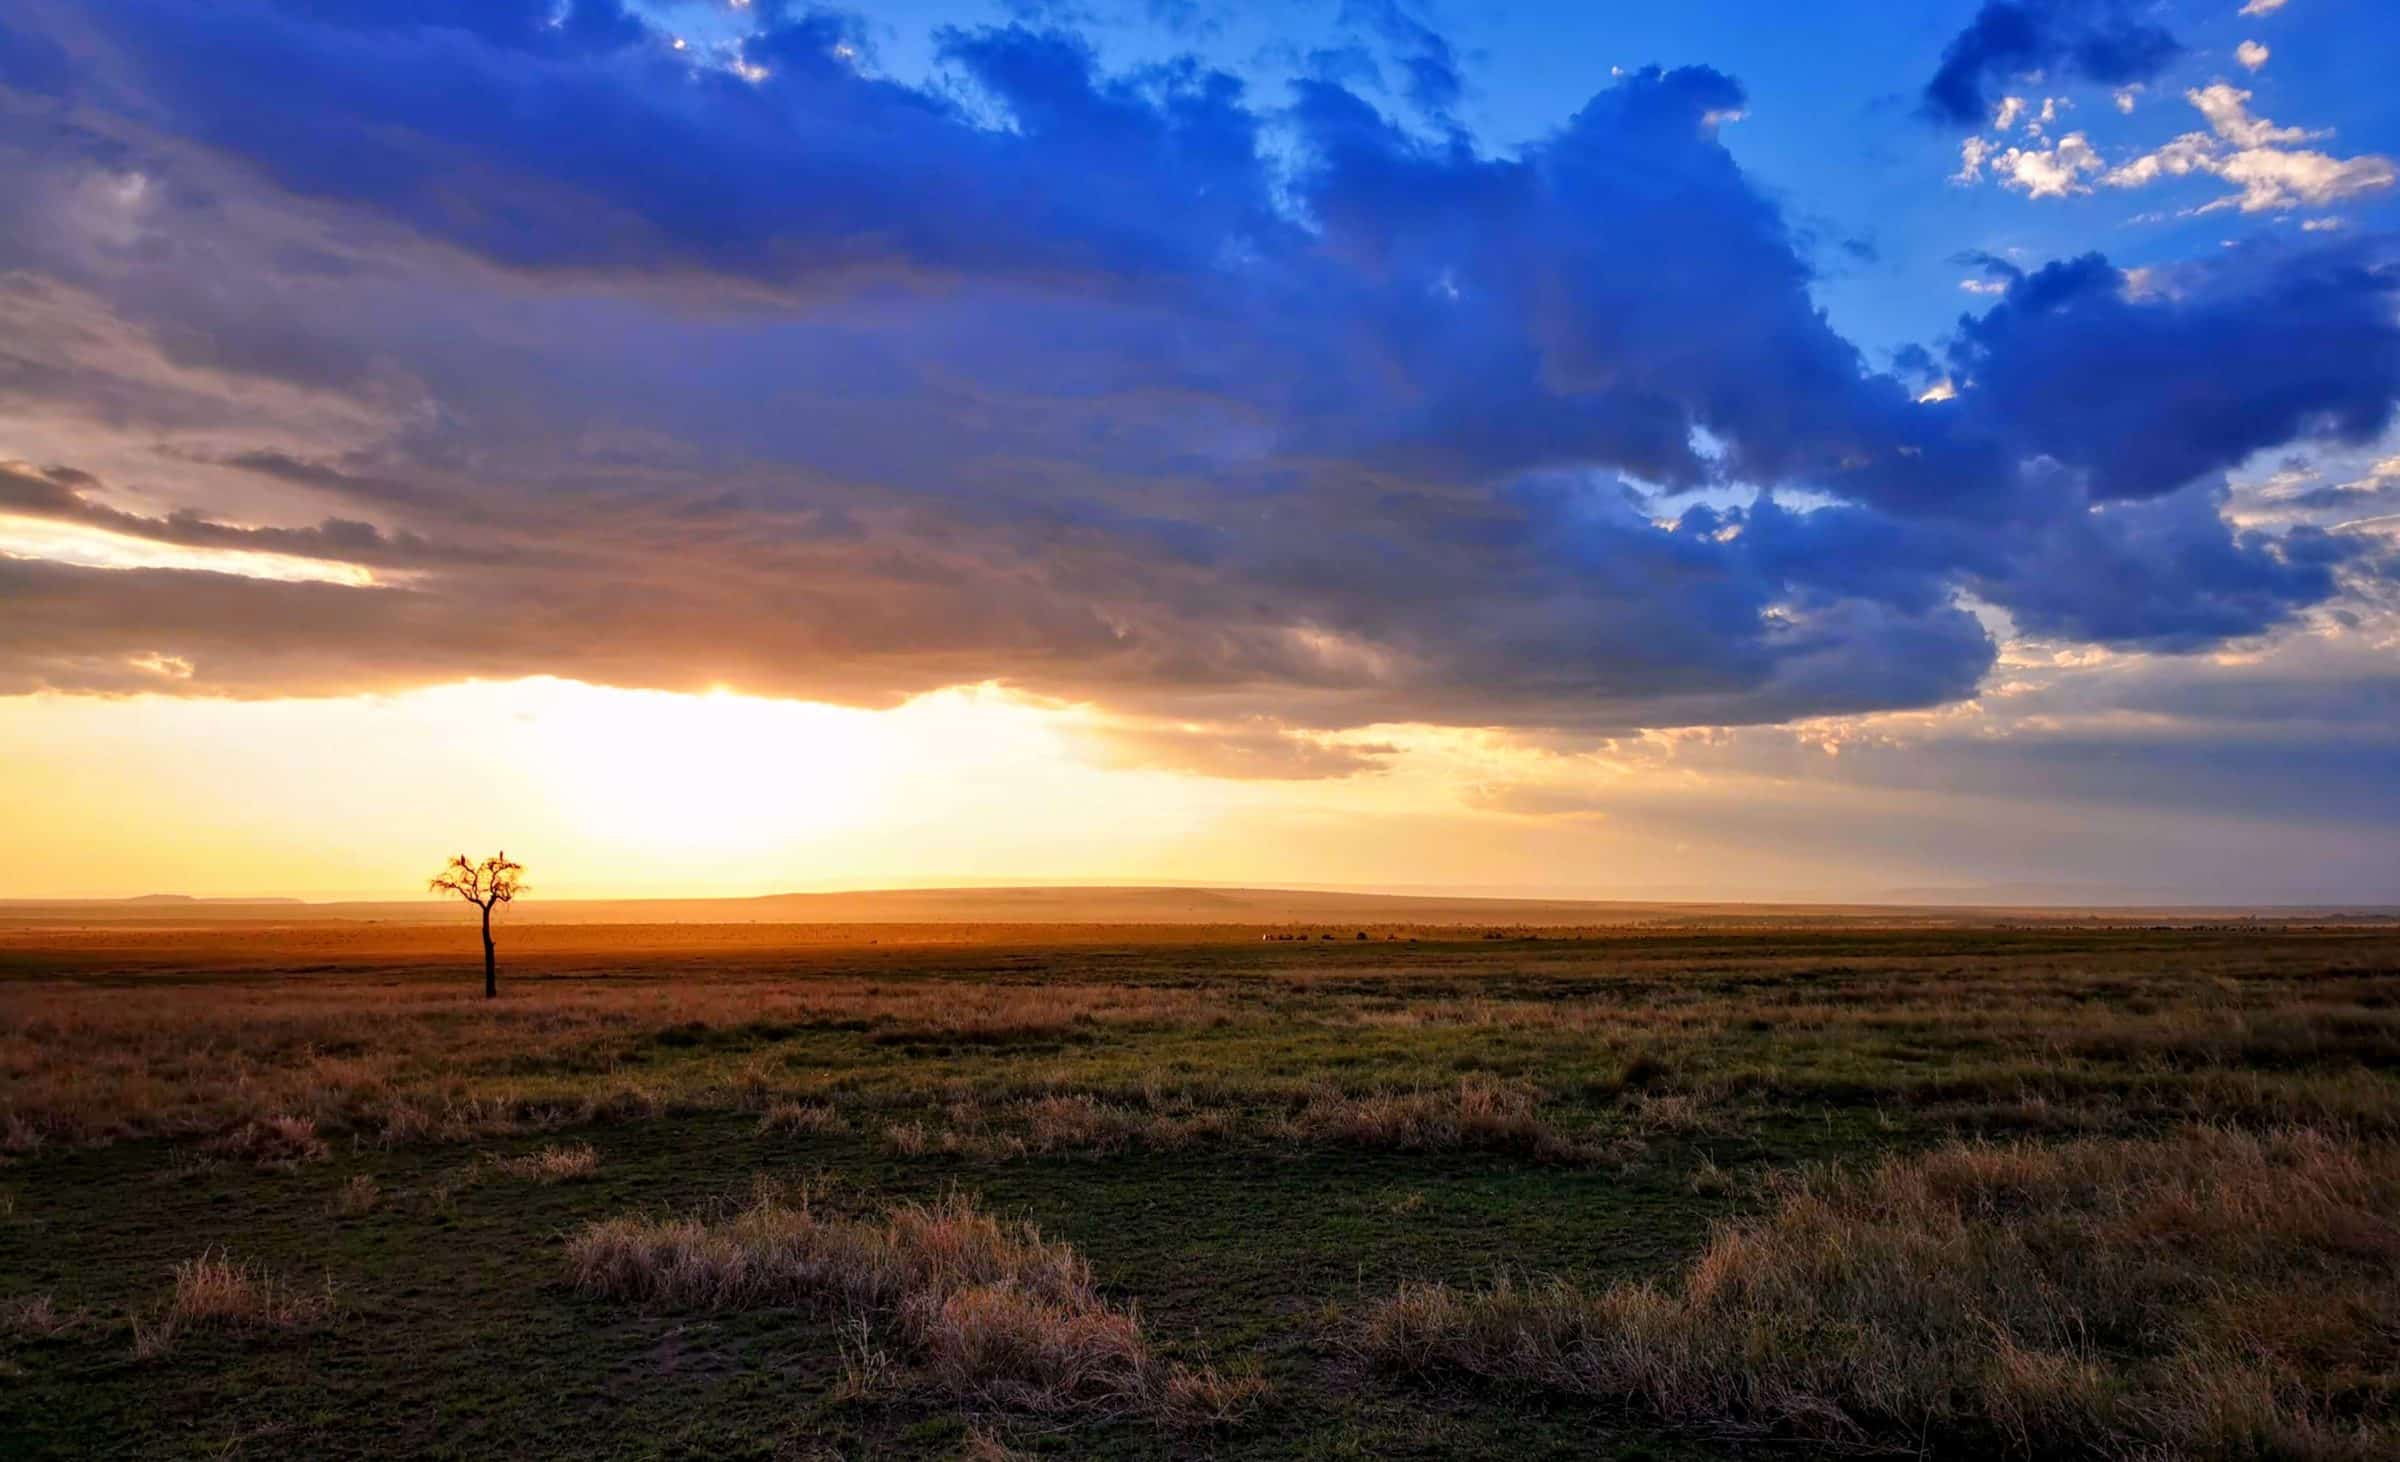 Grandes nubes, árboles perdidos y algunos animales en el fondo. Otro día más en Masai Mara